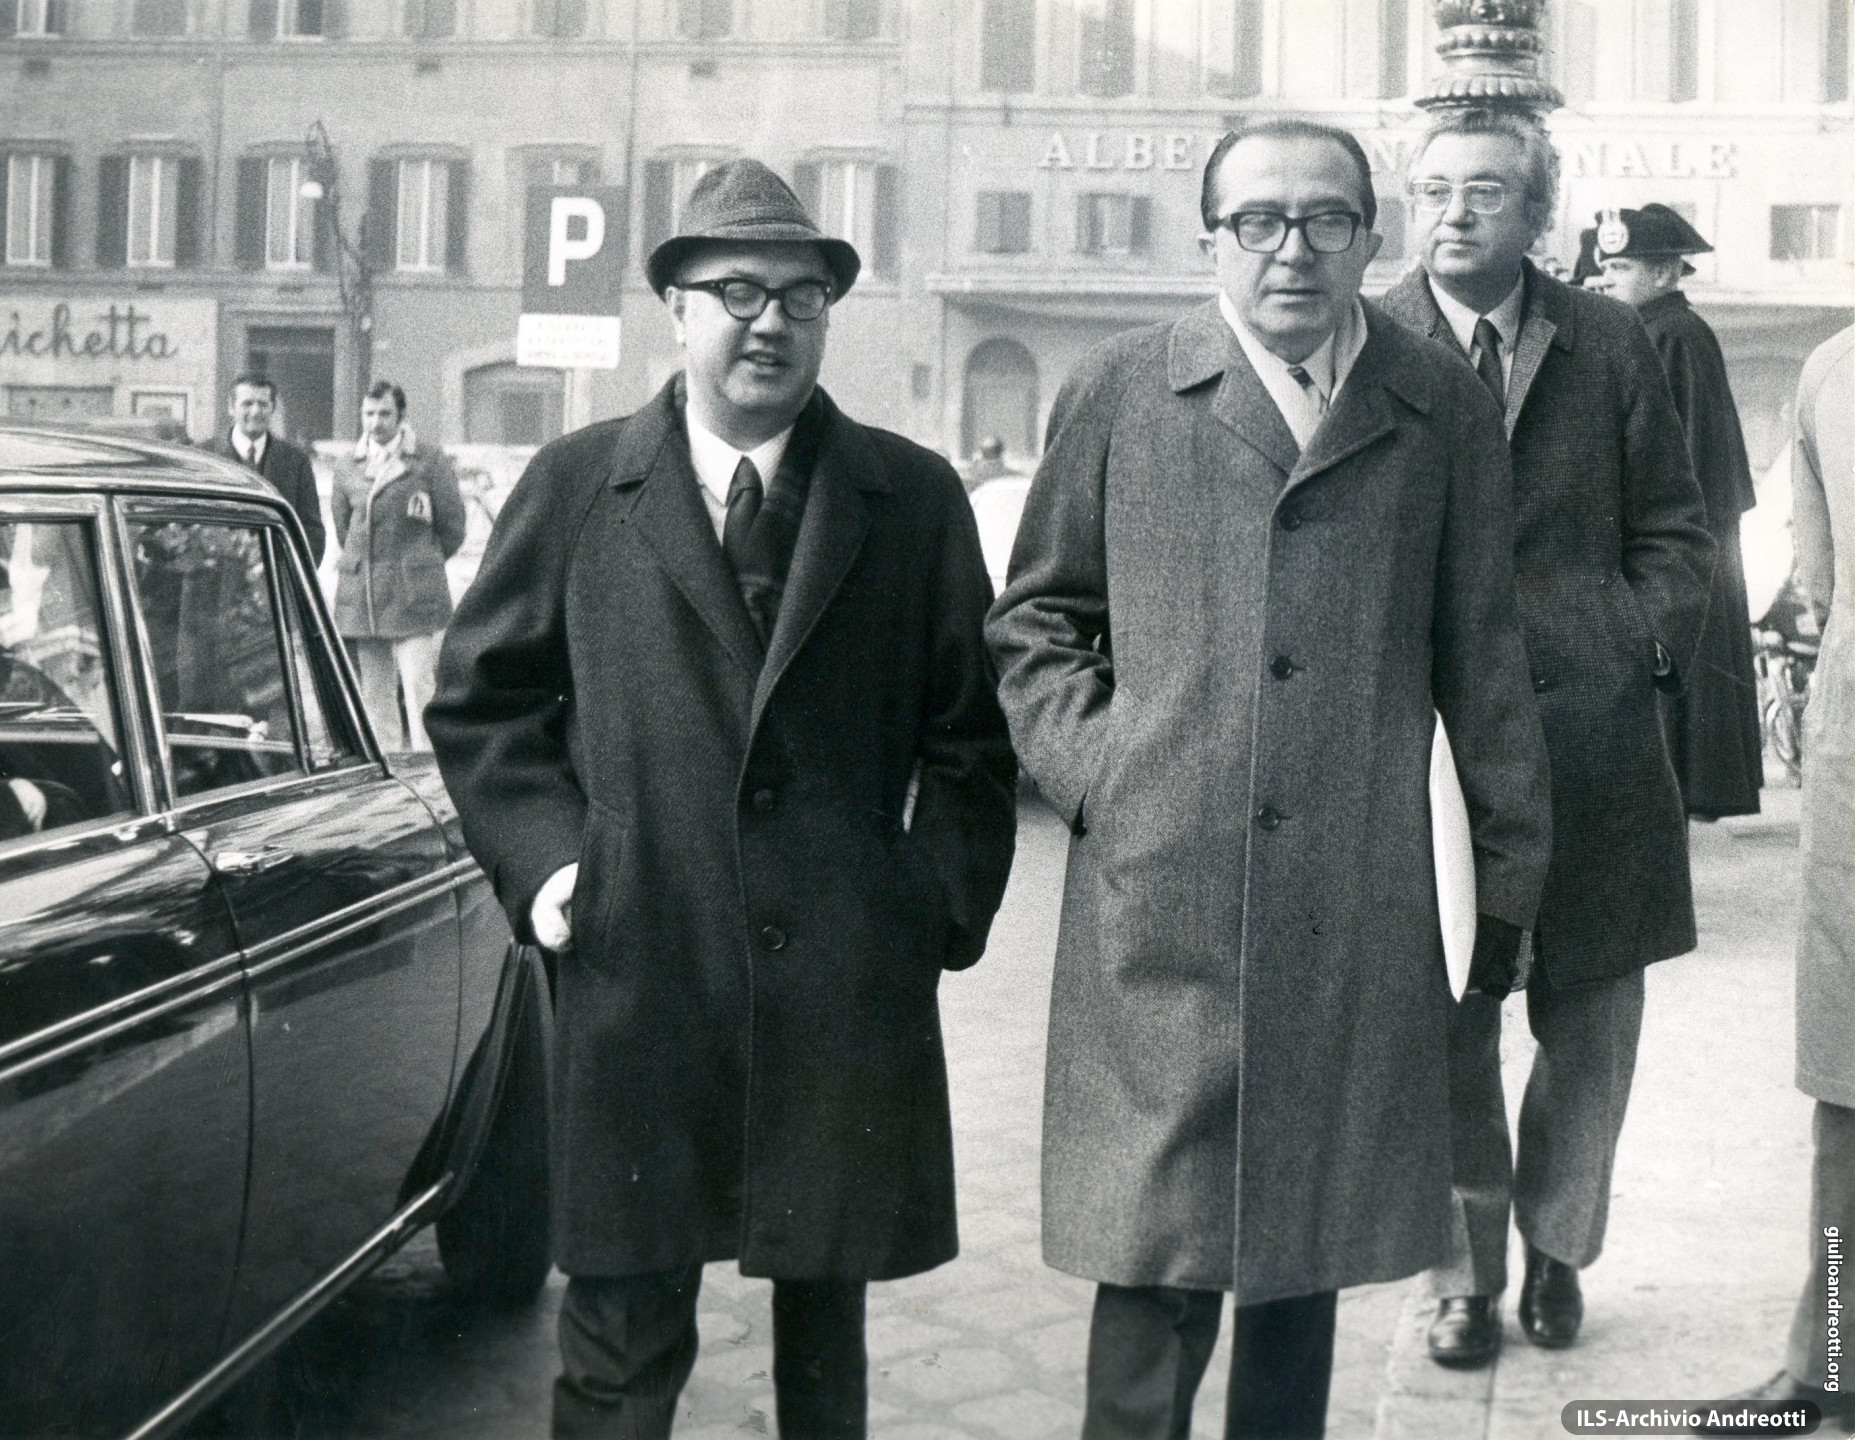 Dicembre 1971. Andreotti in piazza Montecitorio con Vittorio Bachelet. Dietro, Giorgio Ceccherini.